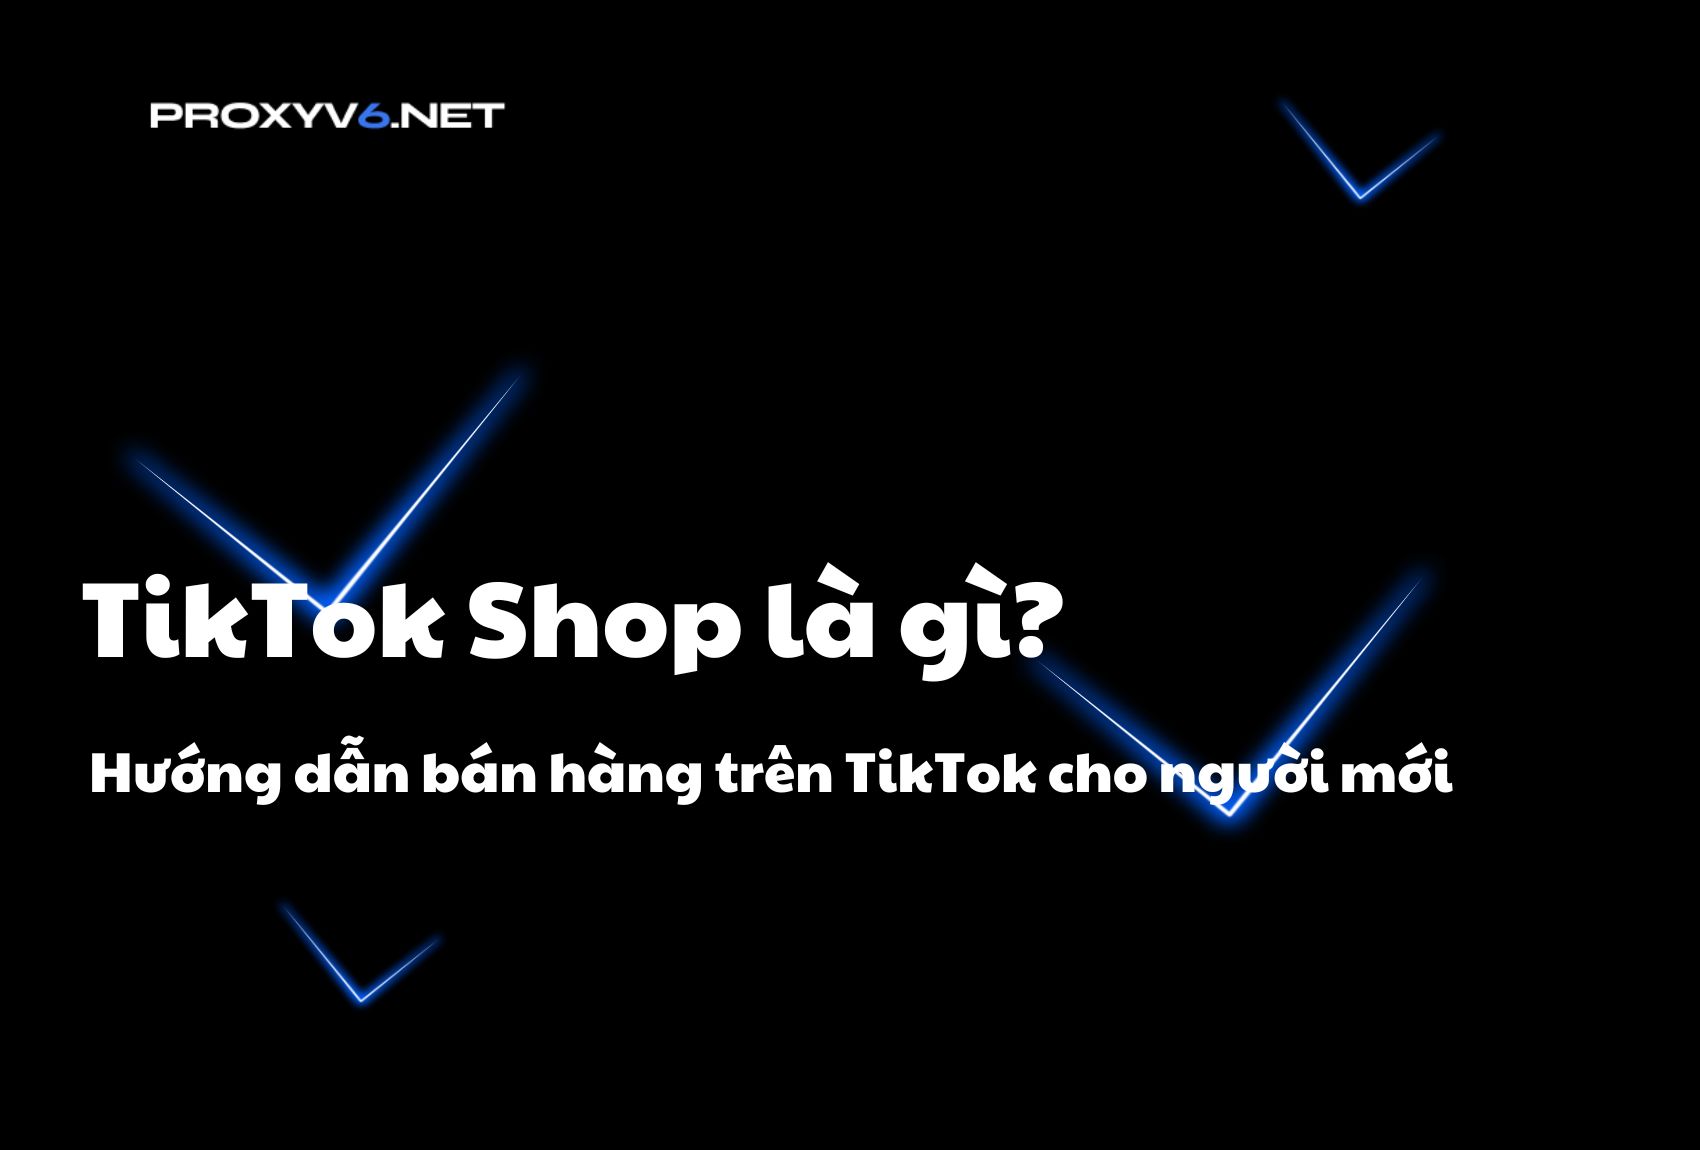 TikTok Shop là gì? Hướng dẫn bán hàng trên TikTok cho người mới